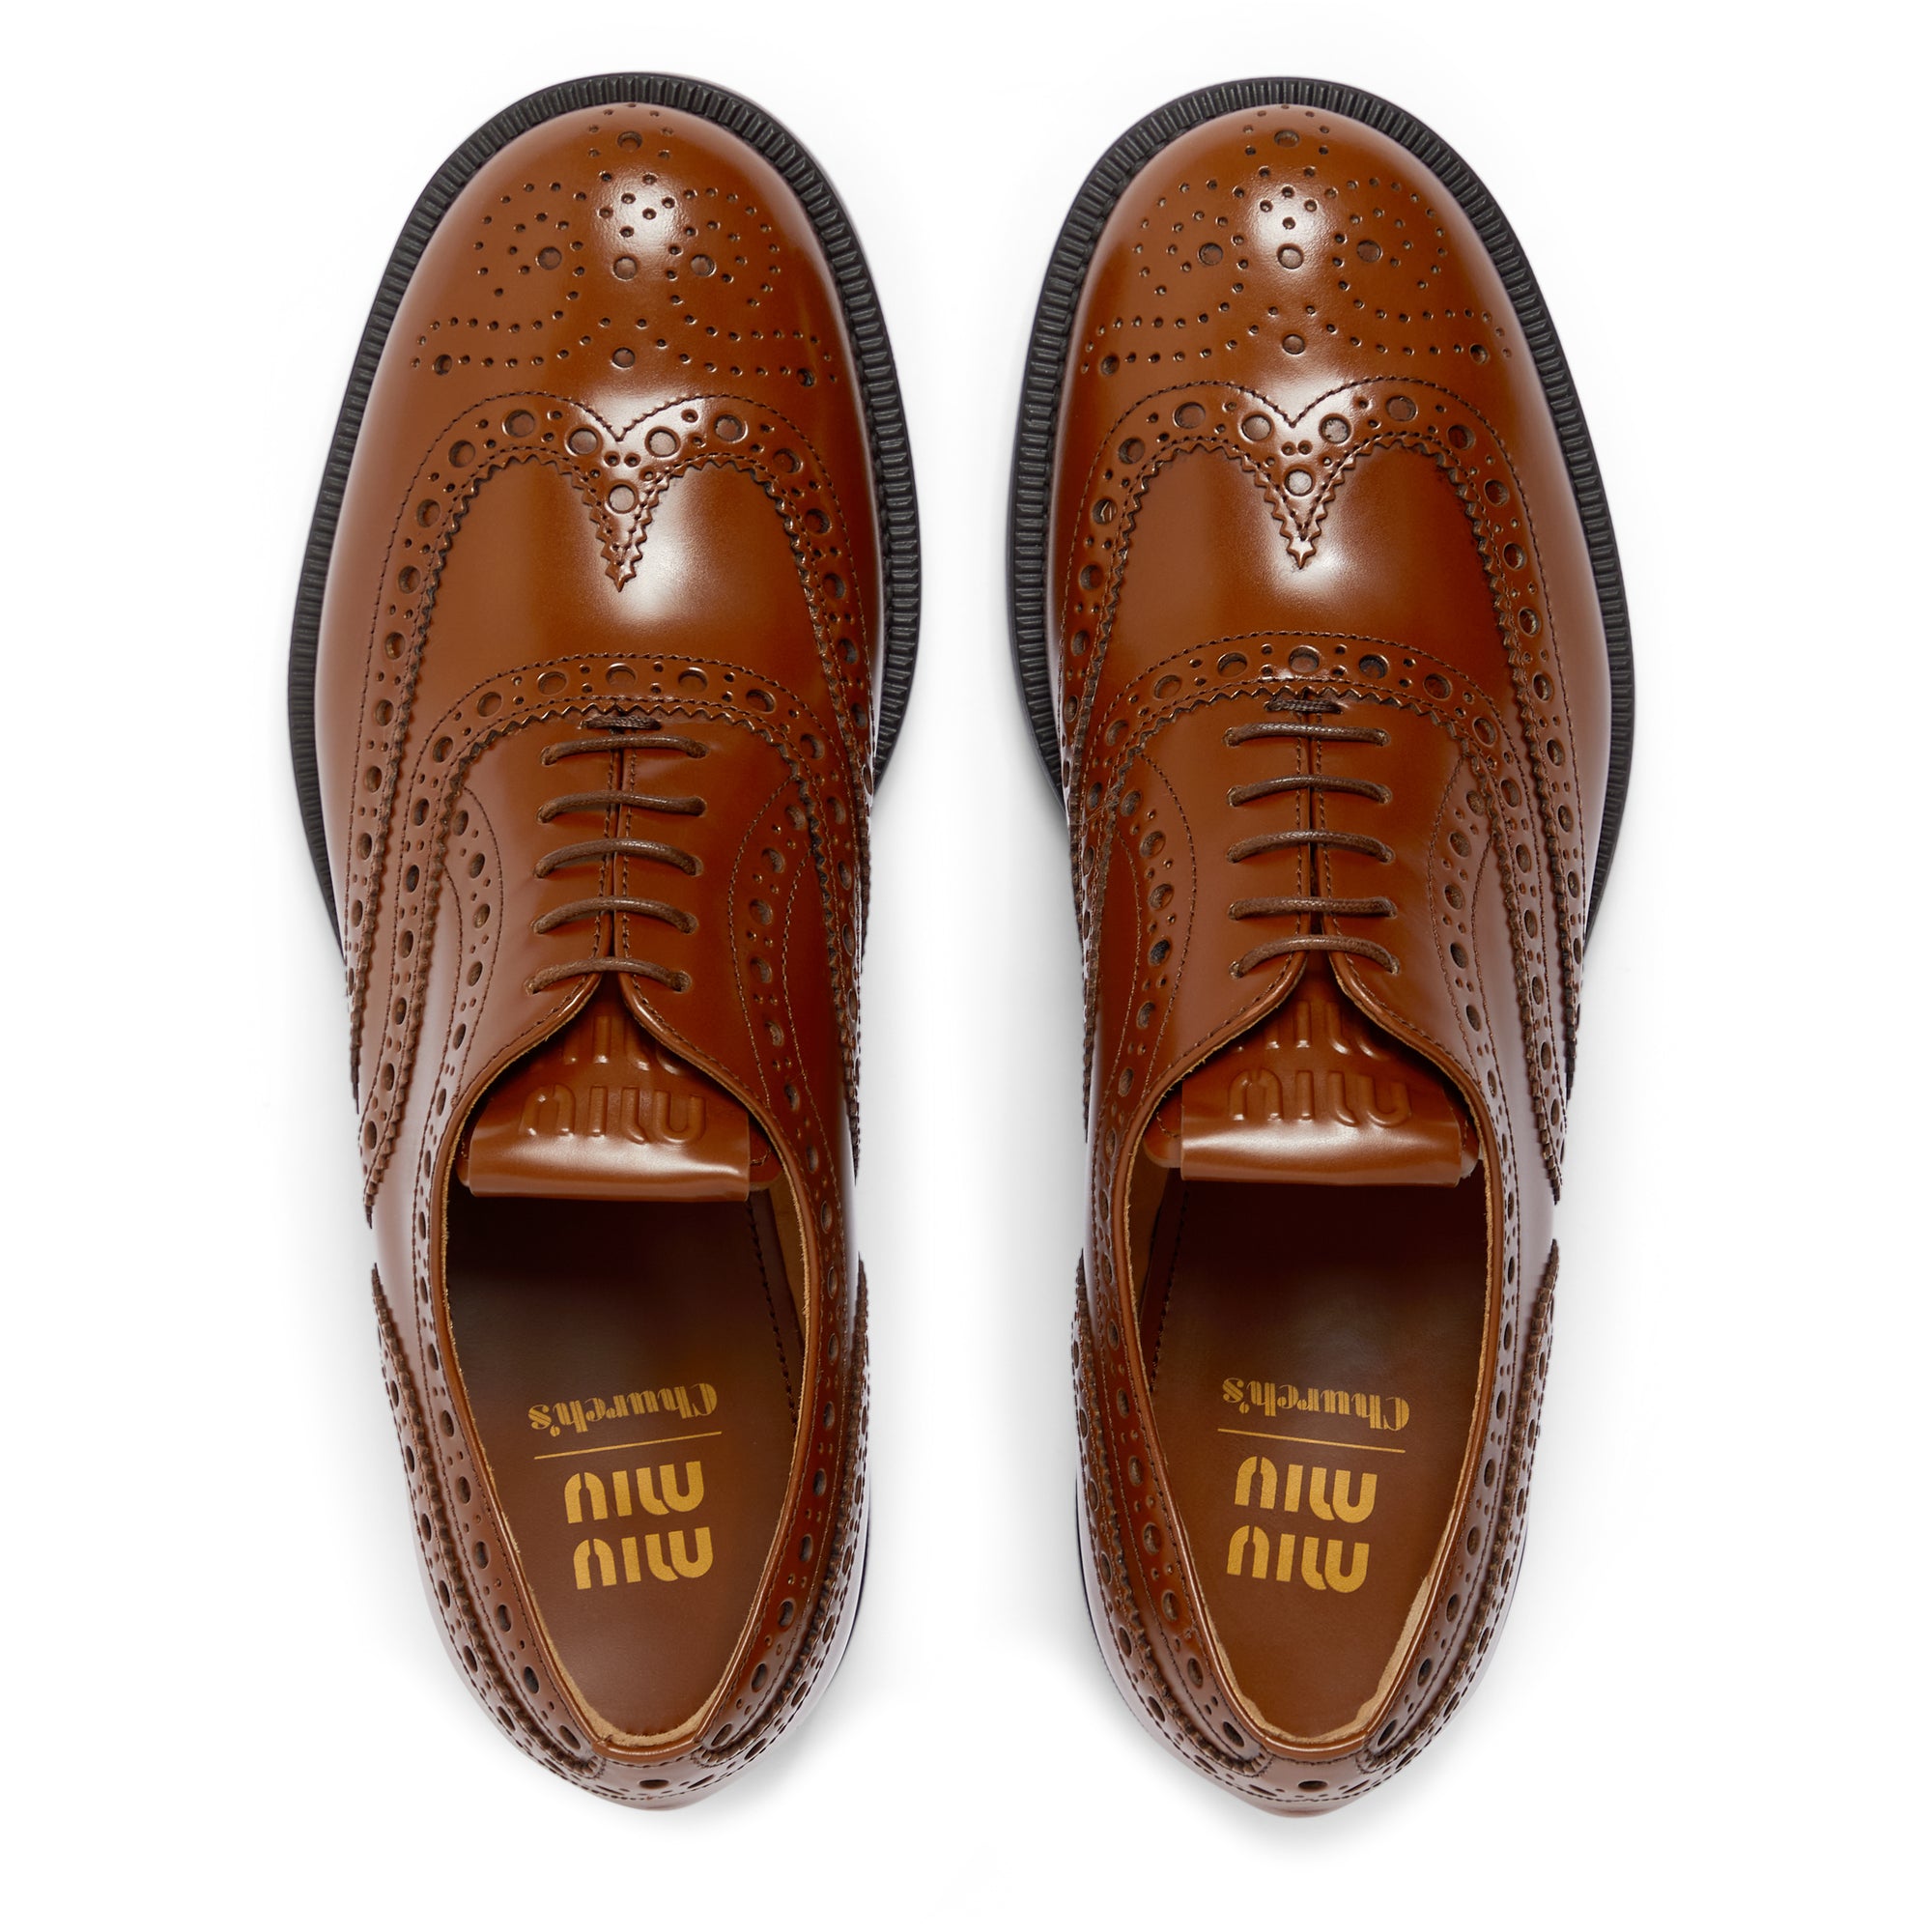 Miu Miu - Church’s Women’s Brushed Leather Oxford Brogue Shoes - (Tobacco) view 5